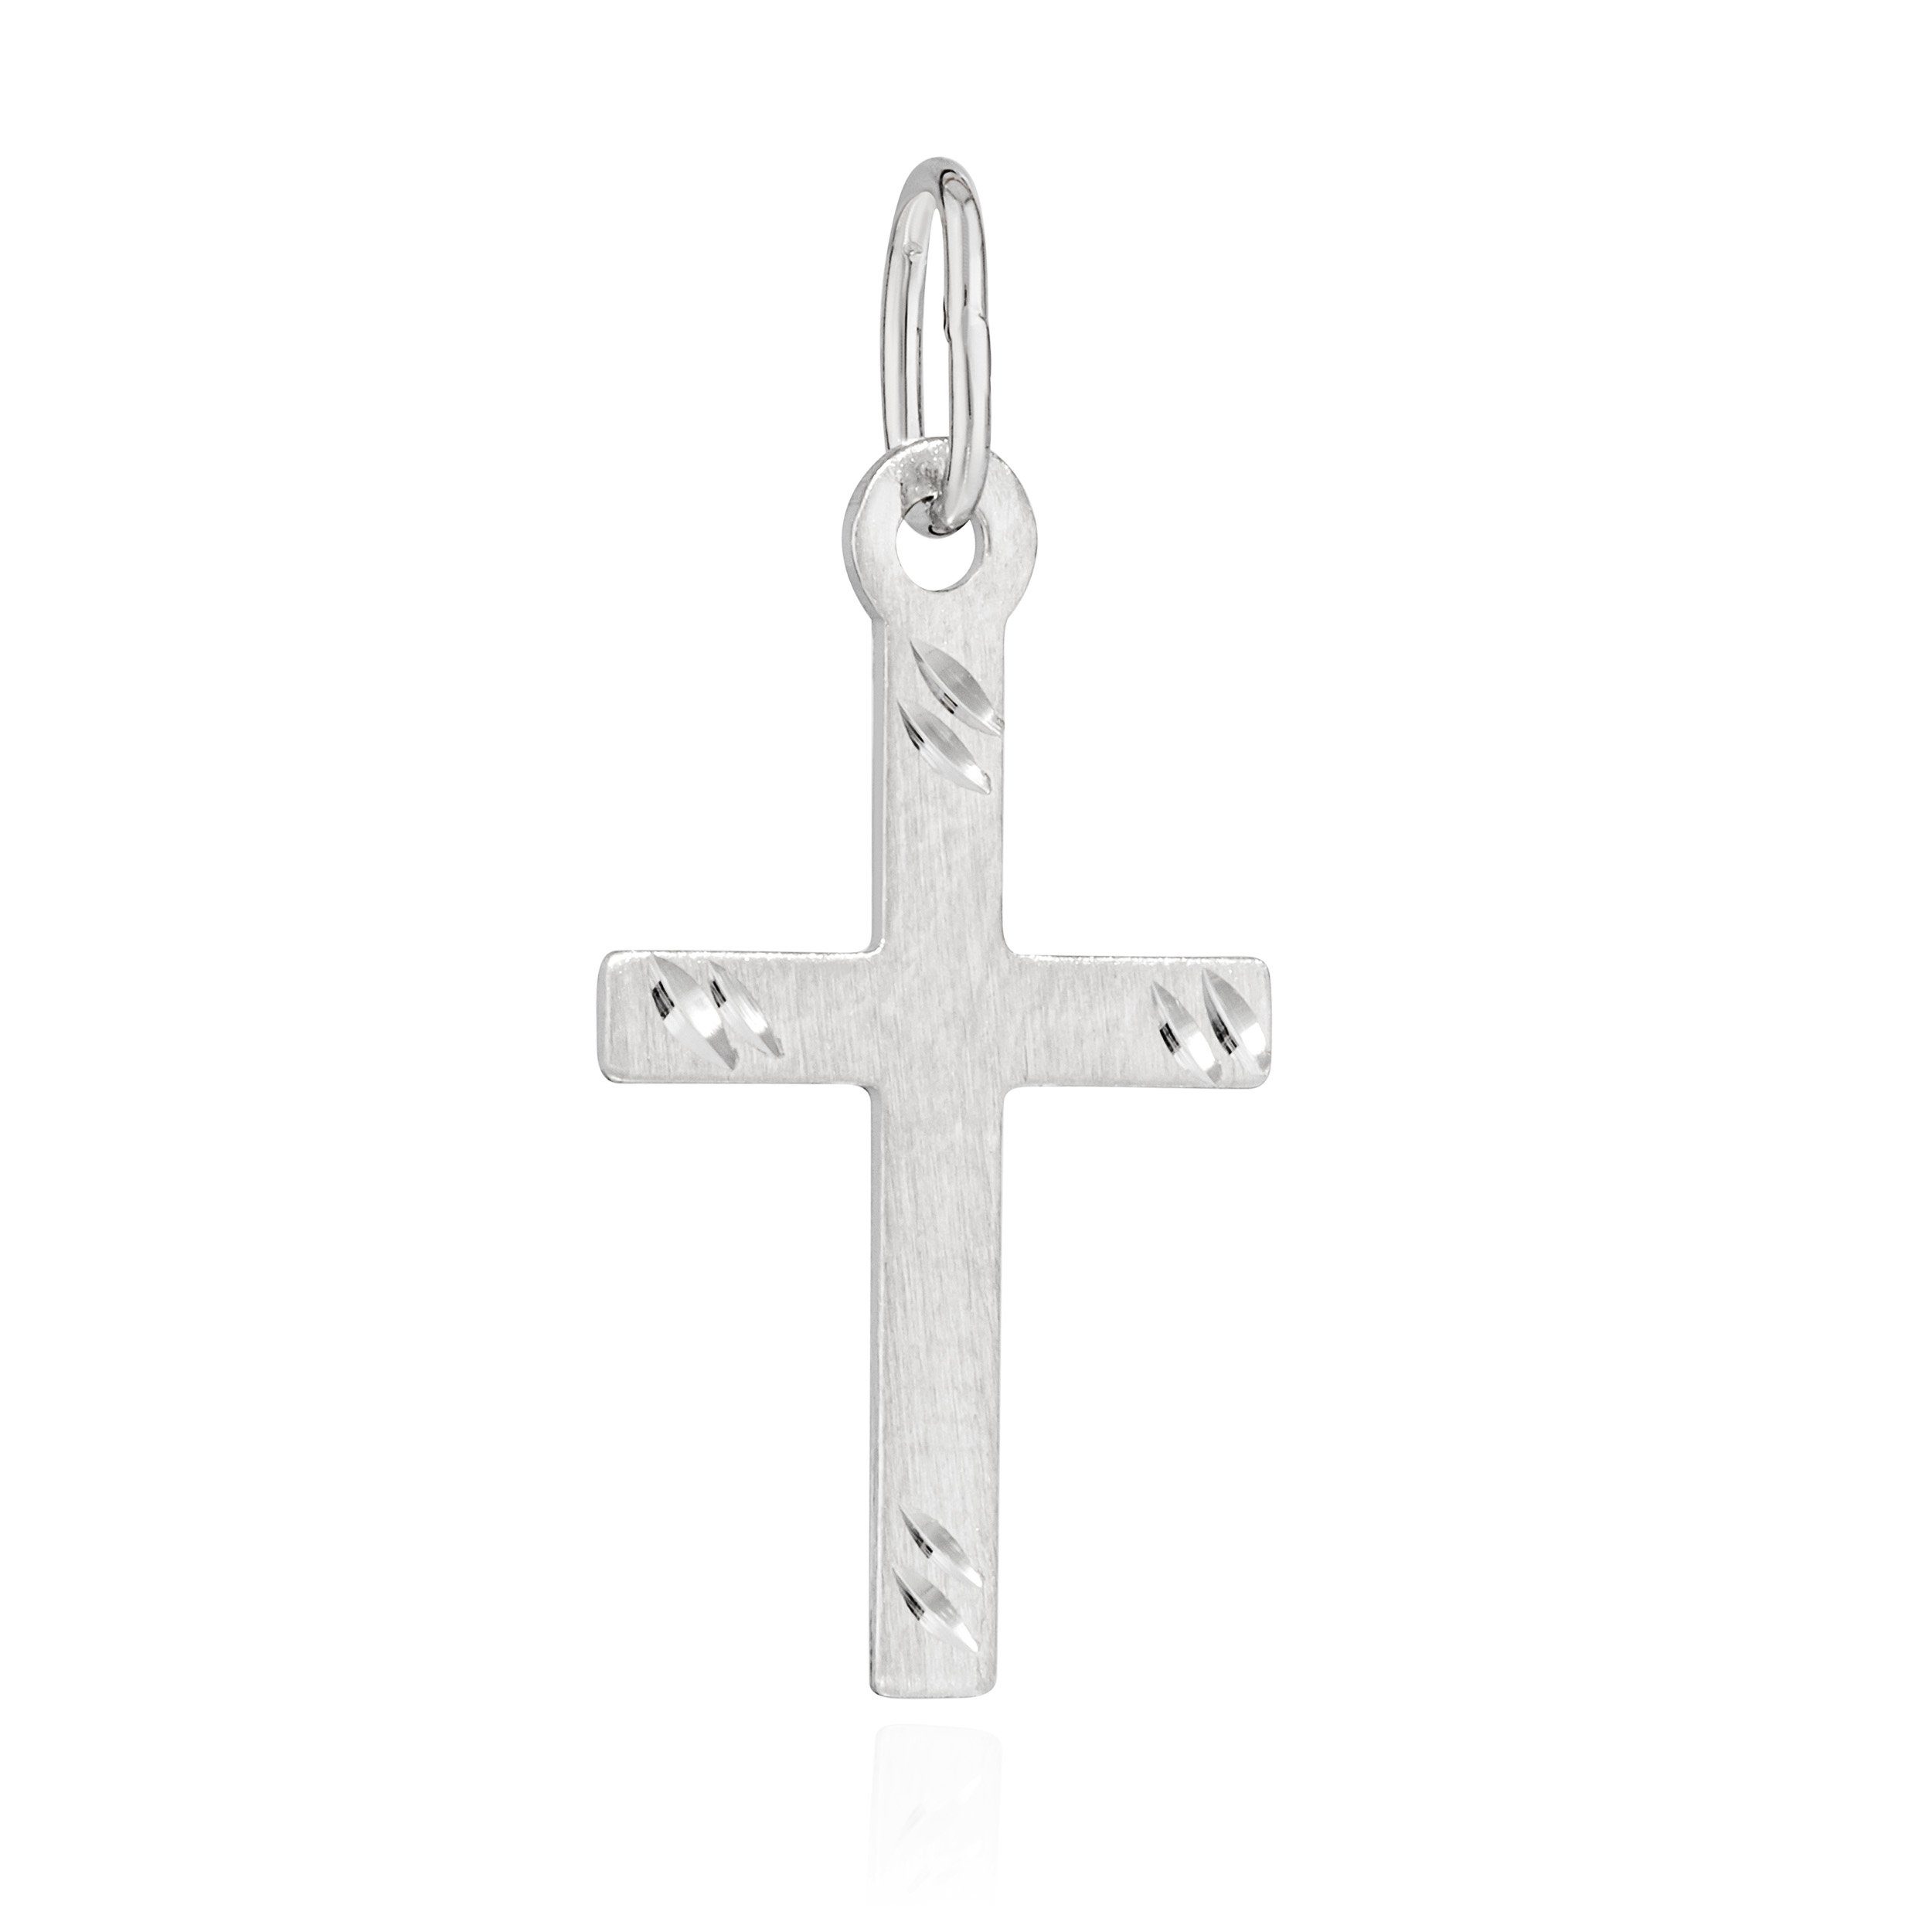 NKlaus Kettenanhänger Kettenanhänger Kreuz 925 Silber matt diamantiert 17x10mm Kruzfix Amule